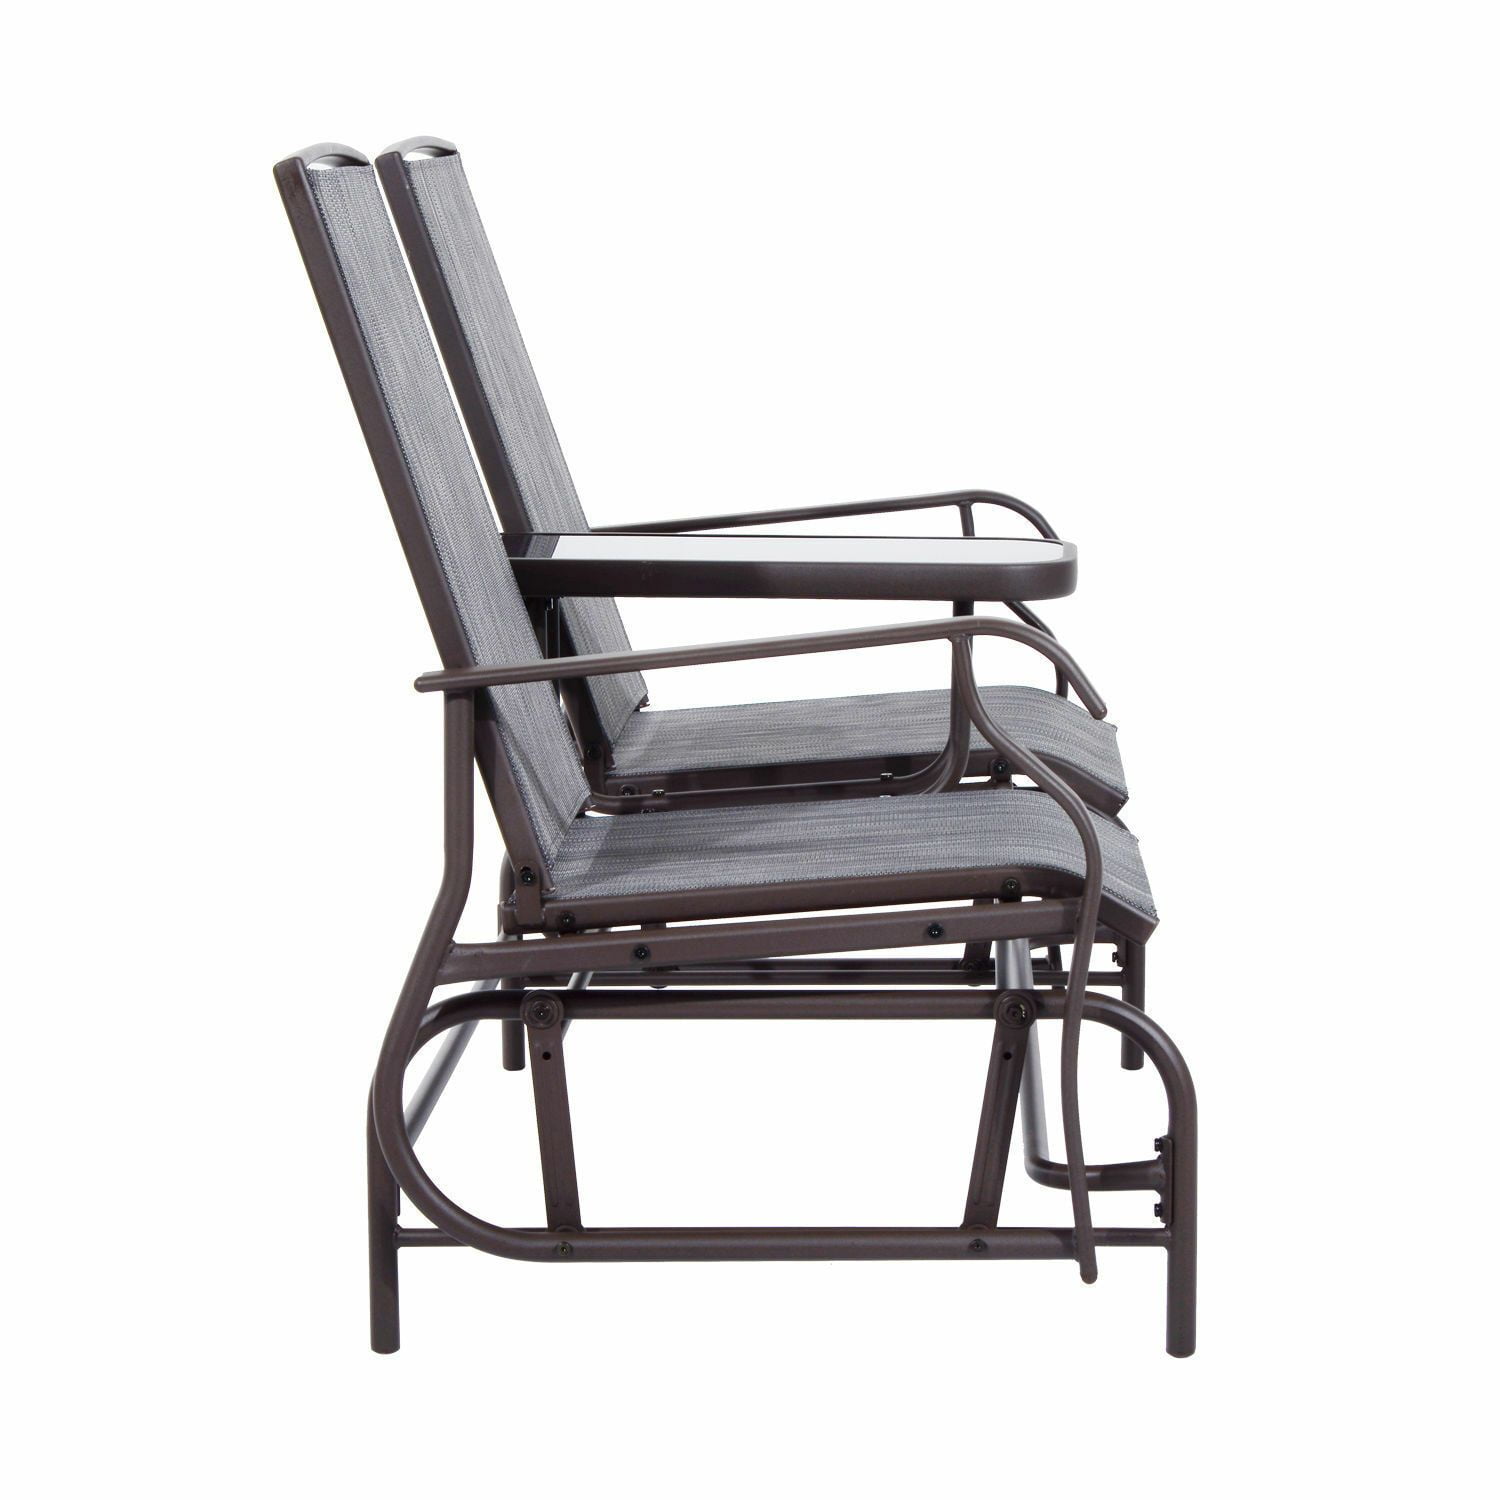 Patio Glider Rocking Chair Bench Loveseat 2 Person Rocker Deck Outdoor Furniture 